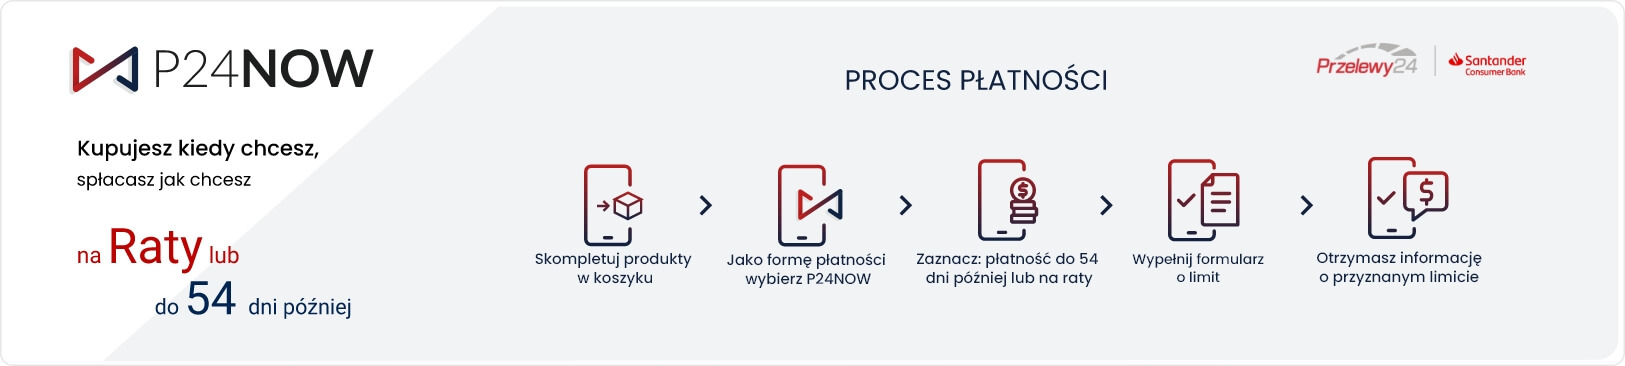 Jak wygląda proces płatności P24NOW. Nowa forma płatności przelewy24.